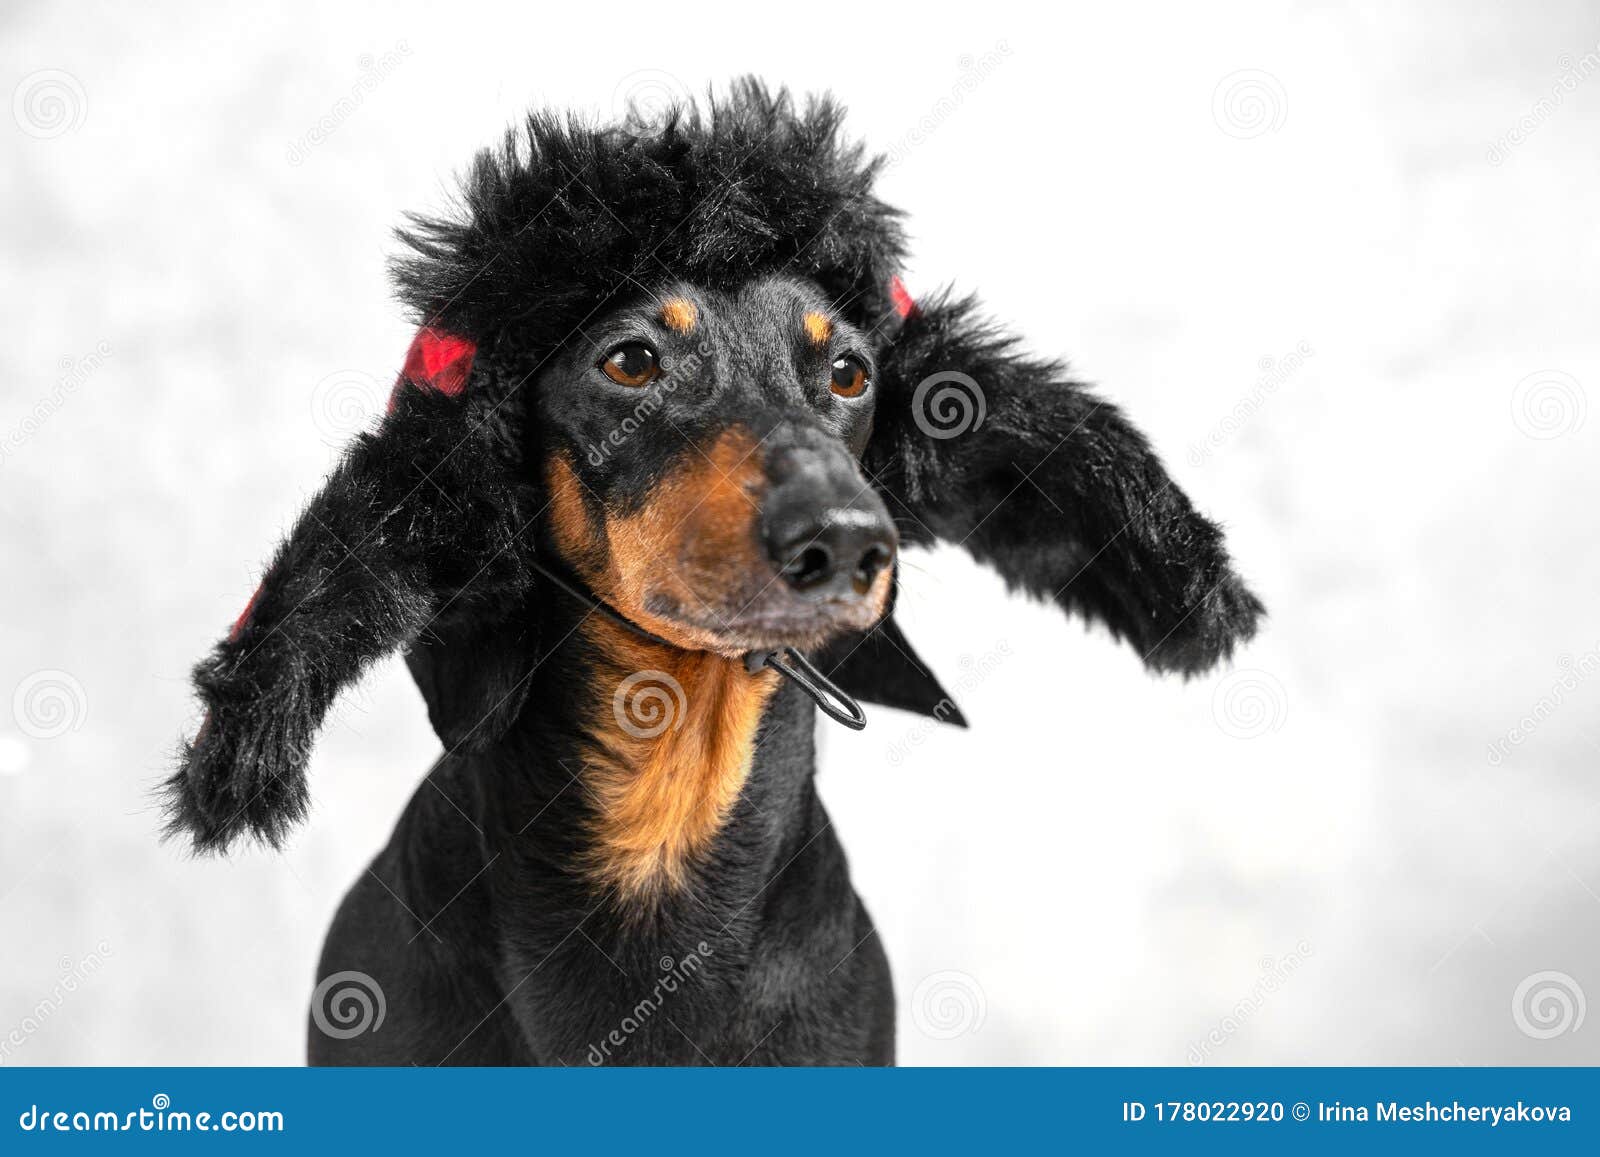 russian dachshund